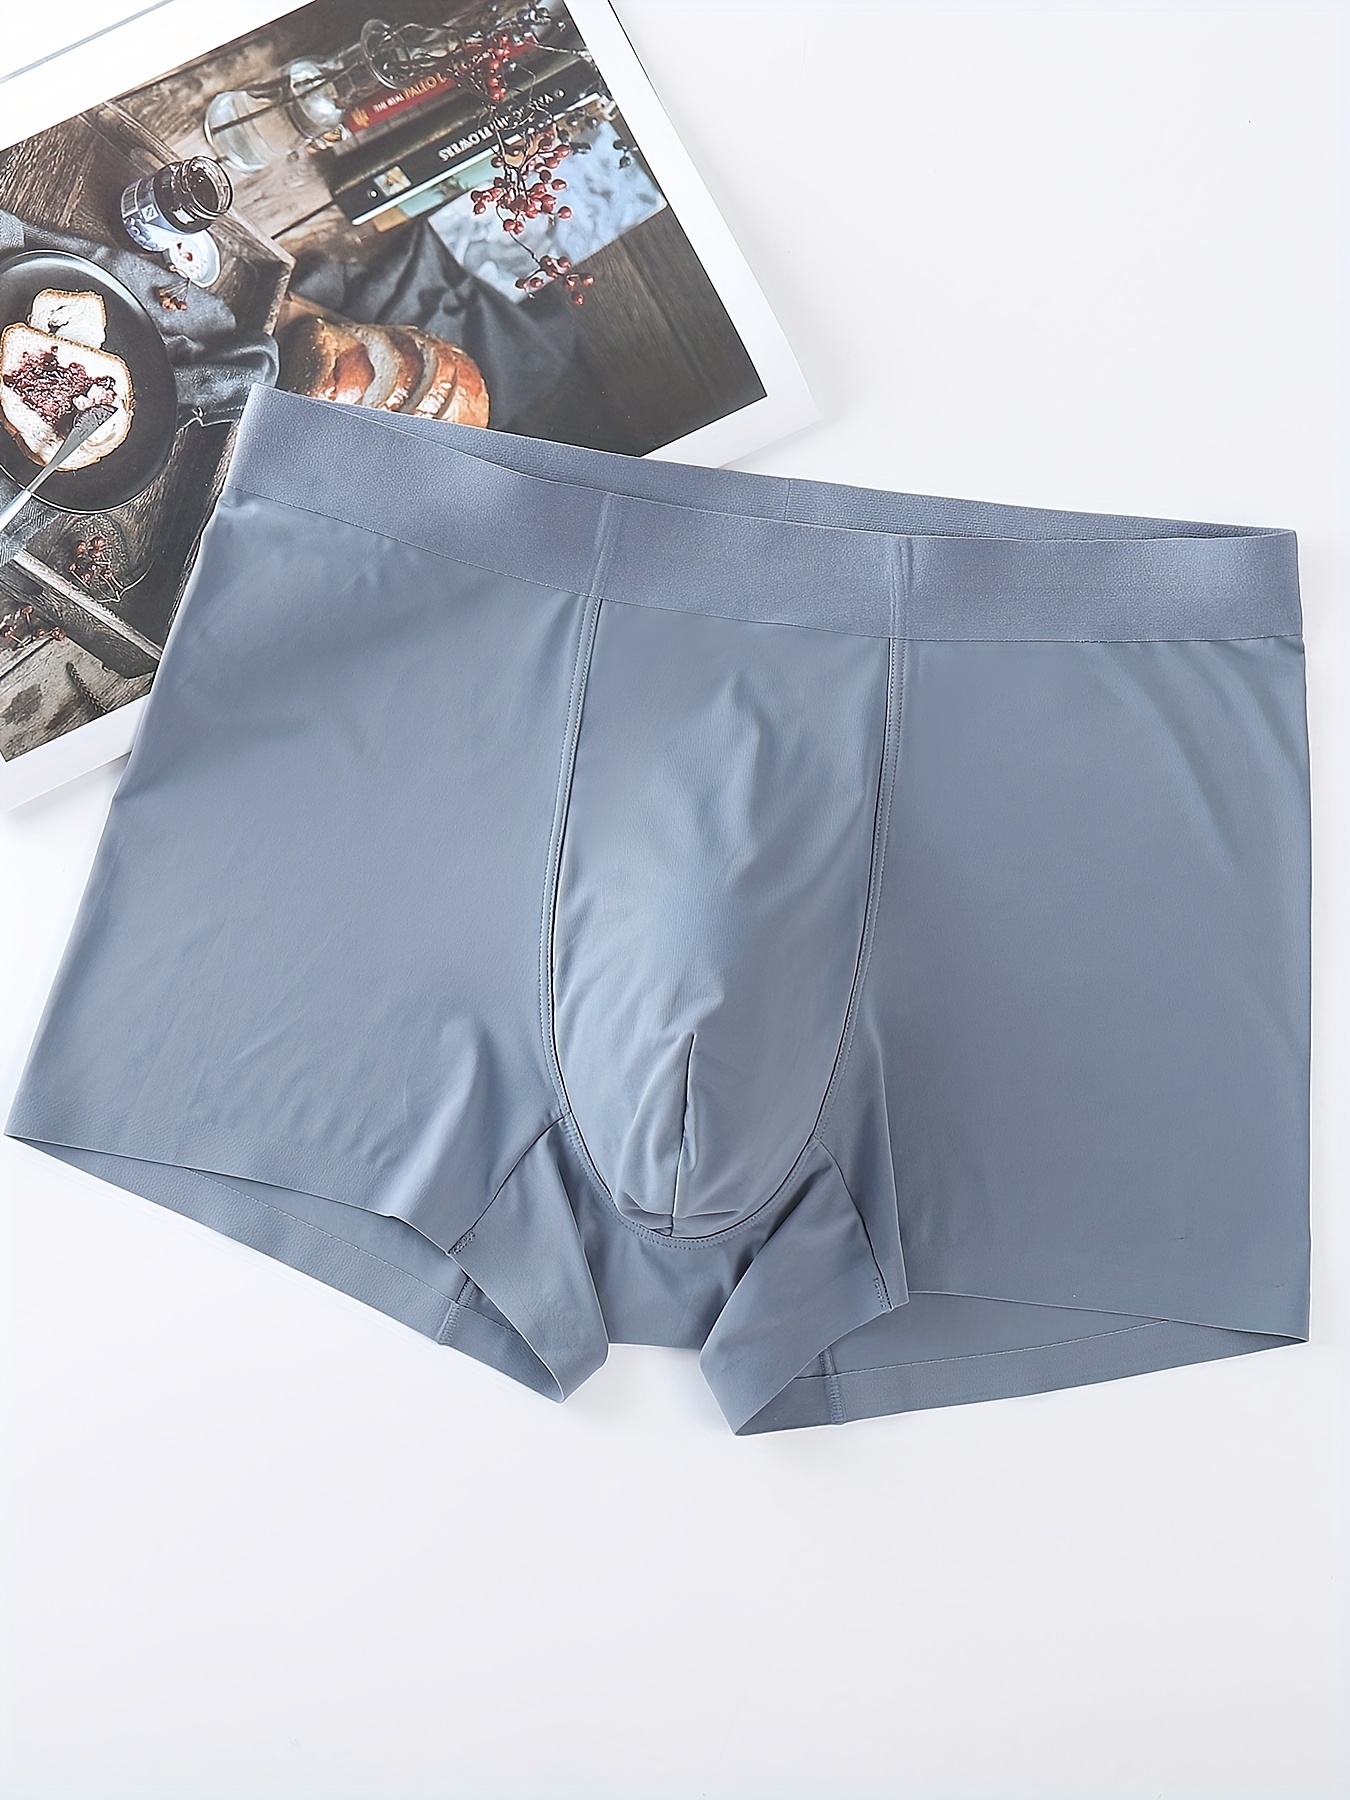 Men's Briefs Comfortable Bulge Pouch Cotton Soft Comfy Non - Temu